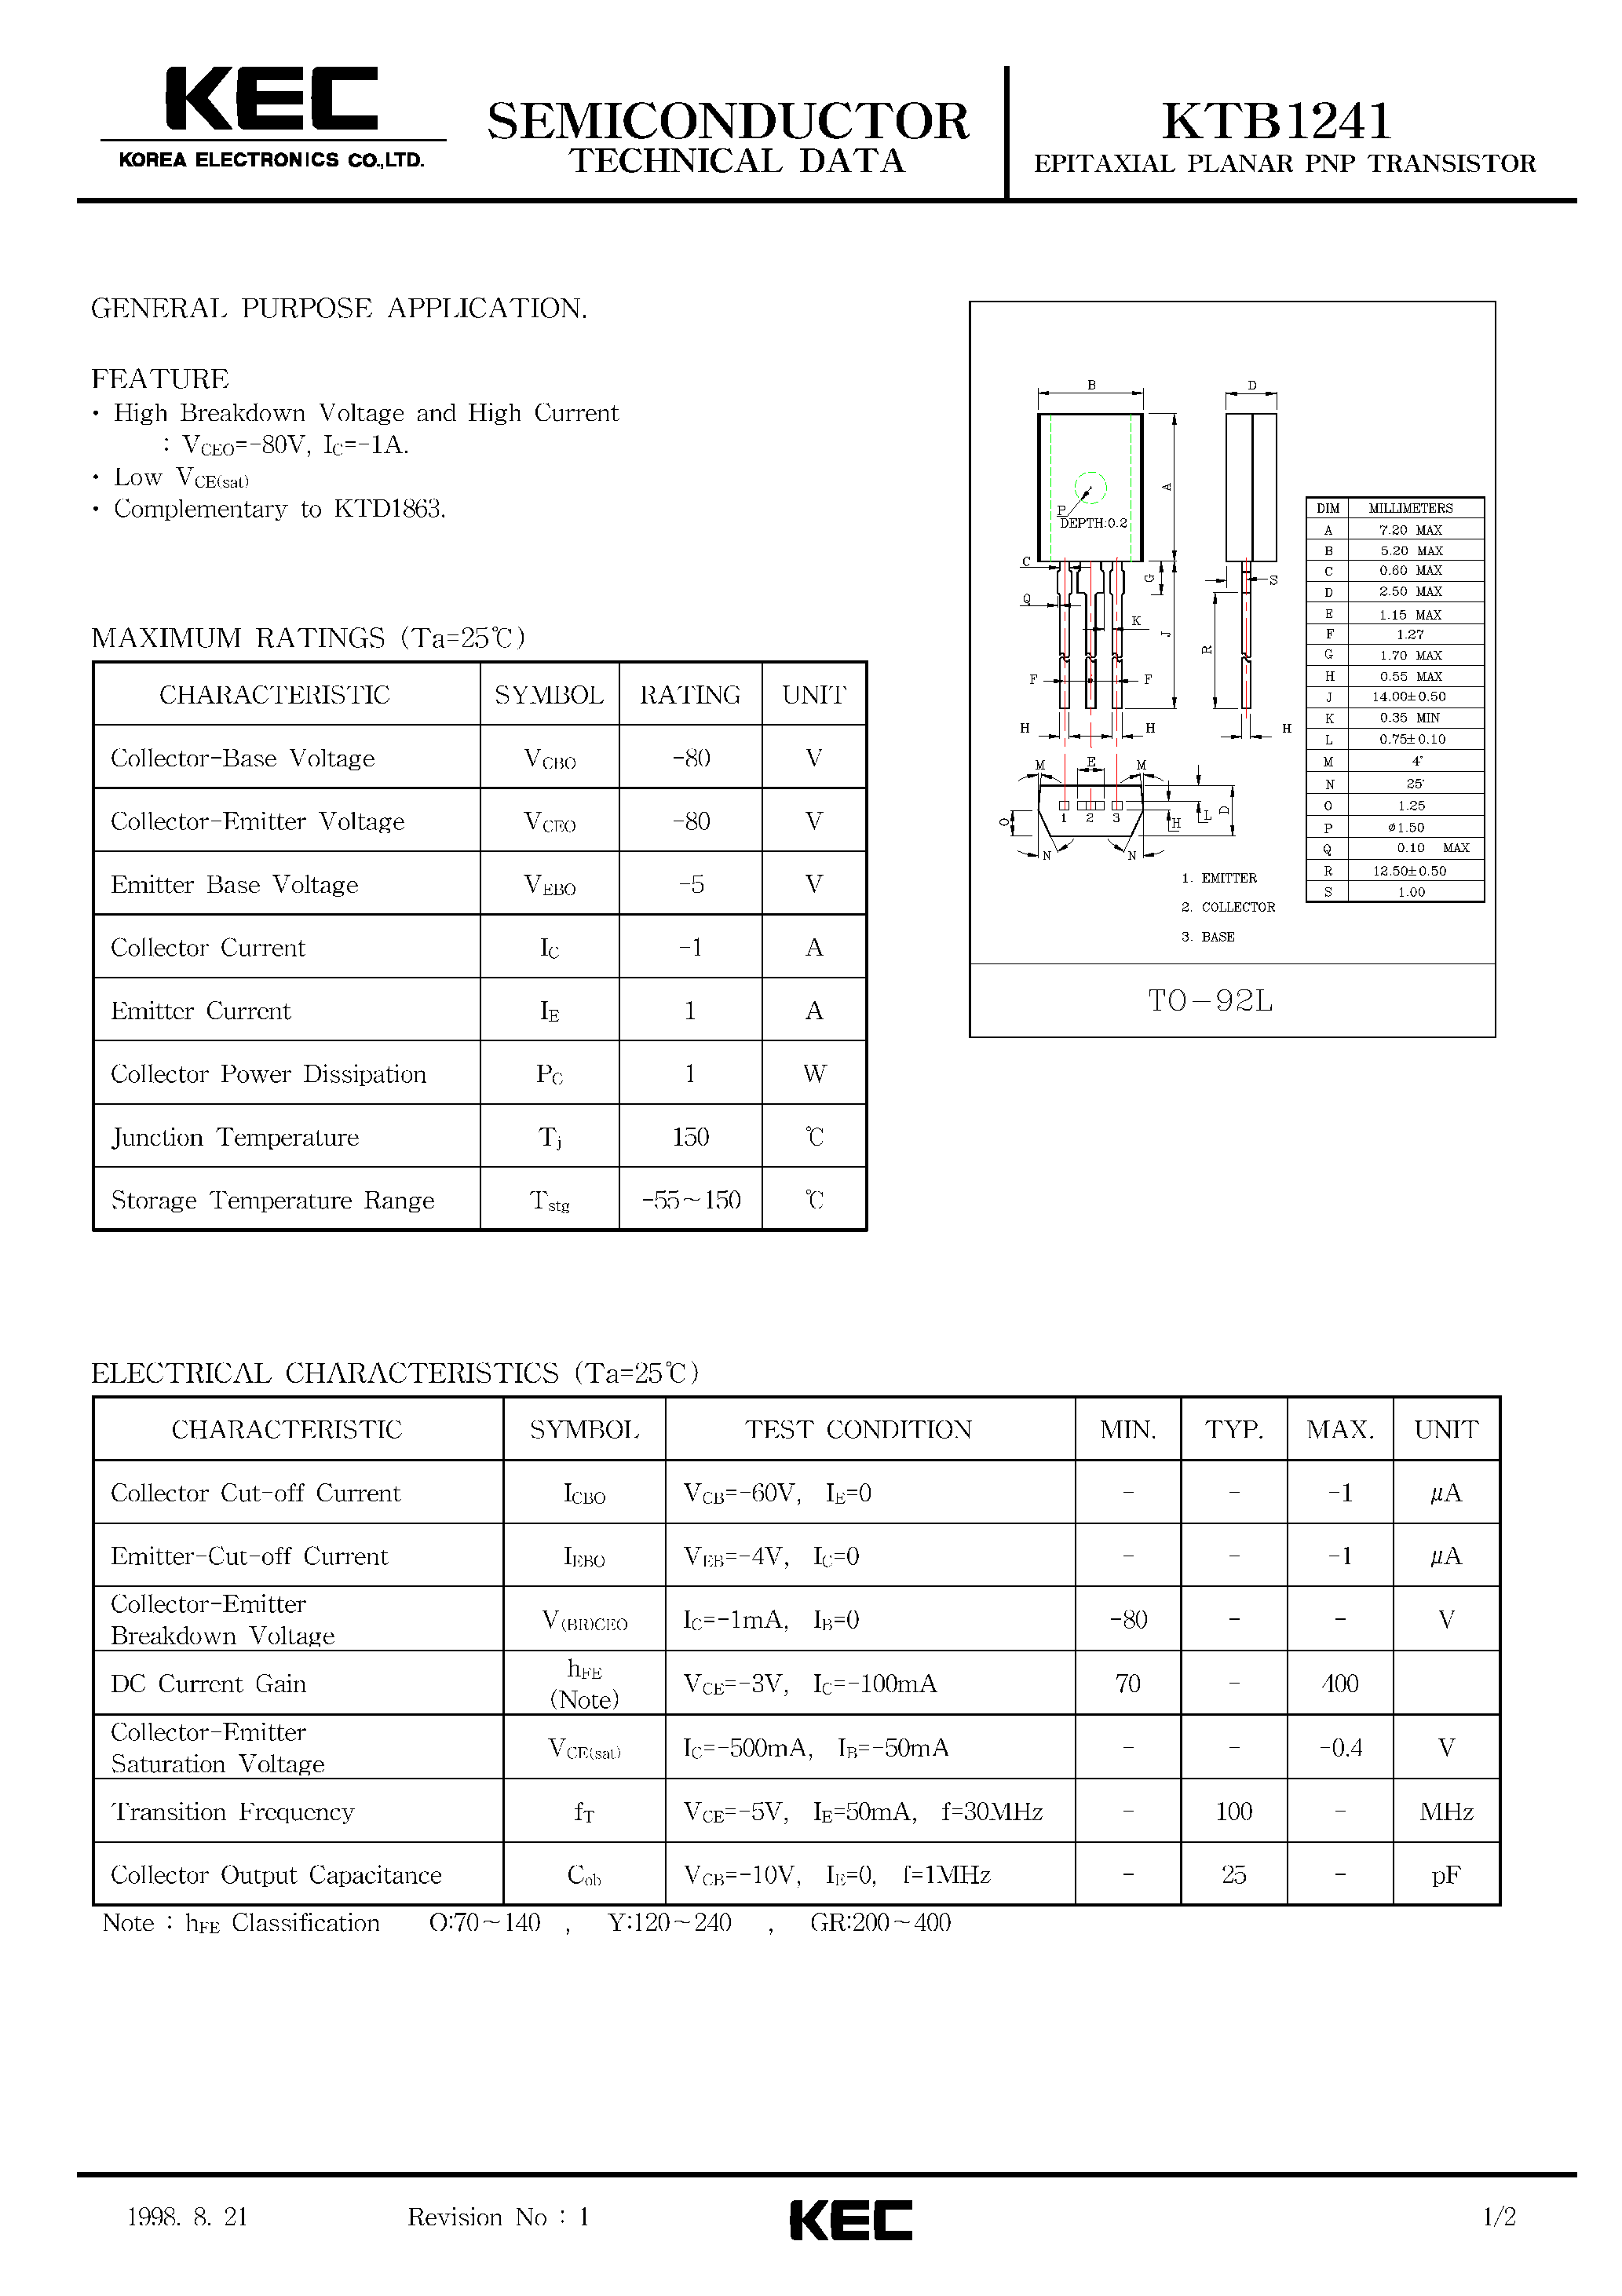 Datasheet KTB1241 - EPITAXIAL PLANAR PNP TRANSISTOR (GENERAL PURPOSE) page 1